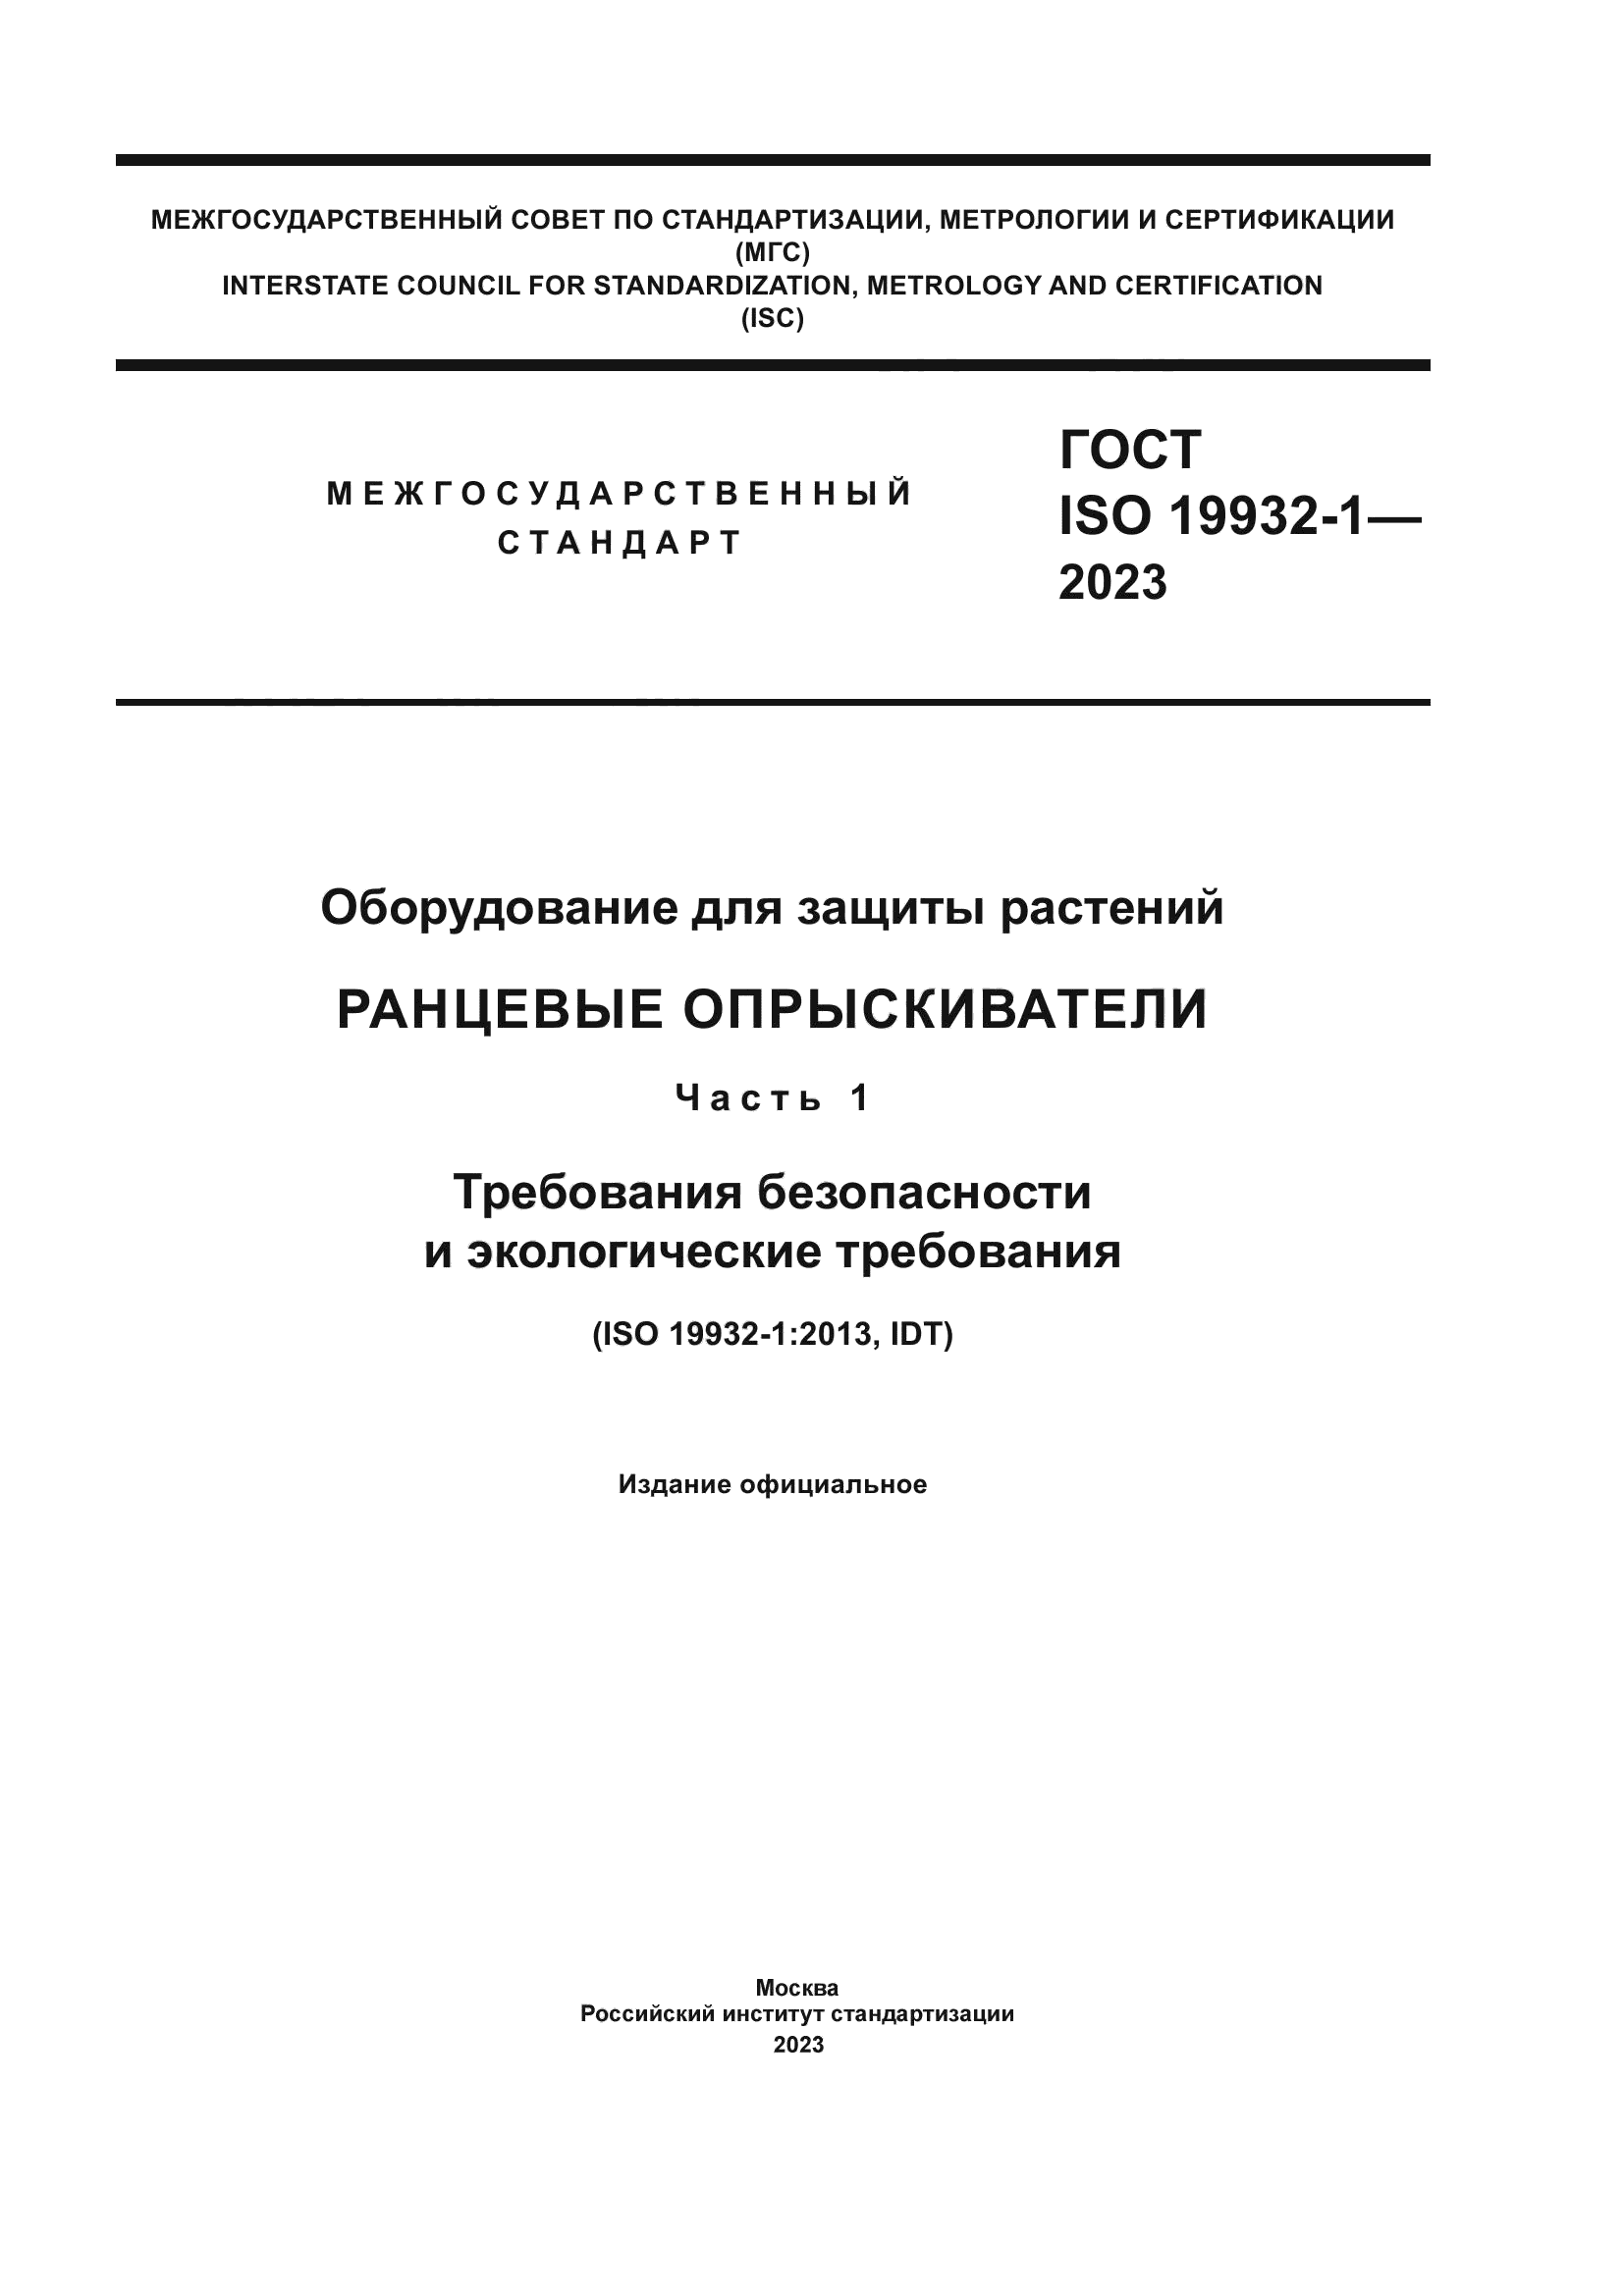 ГОСТ ISO 19932-1-2023